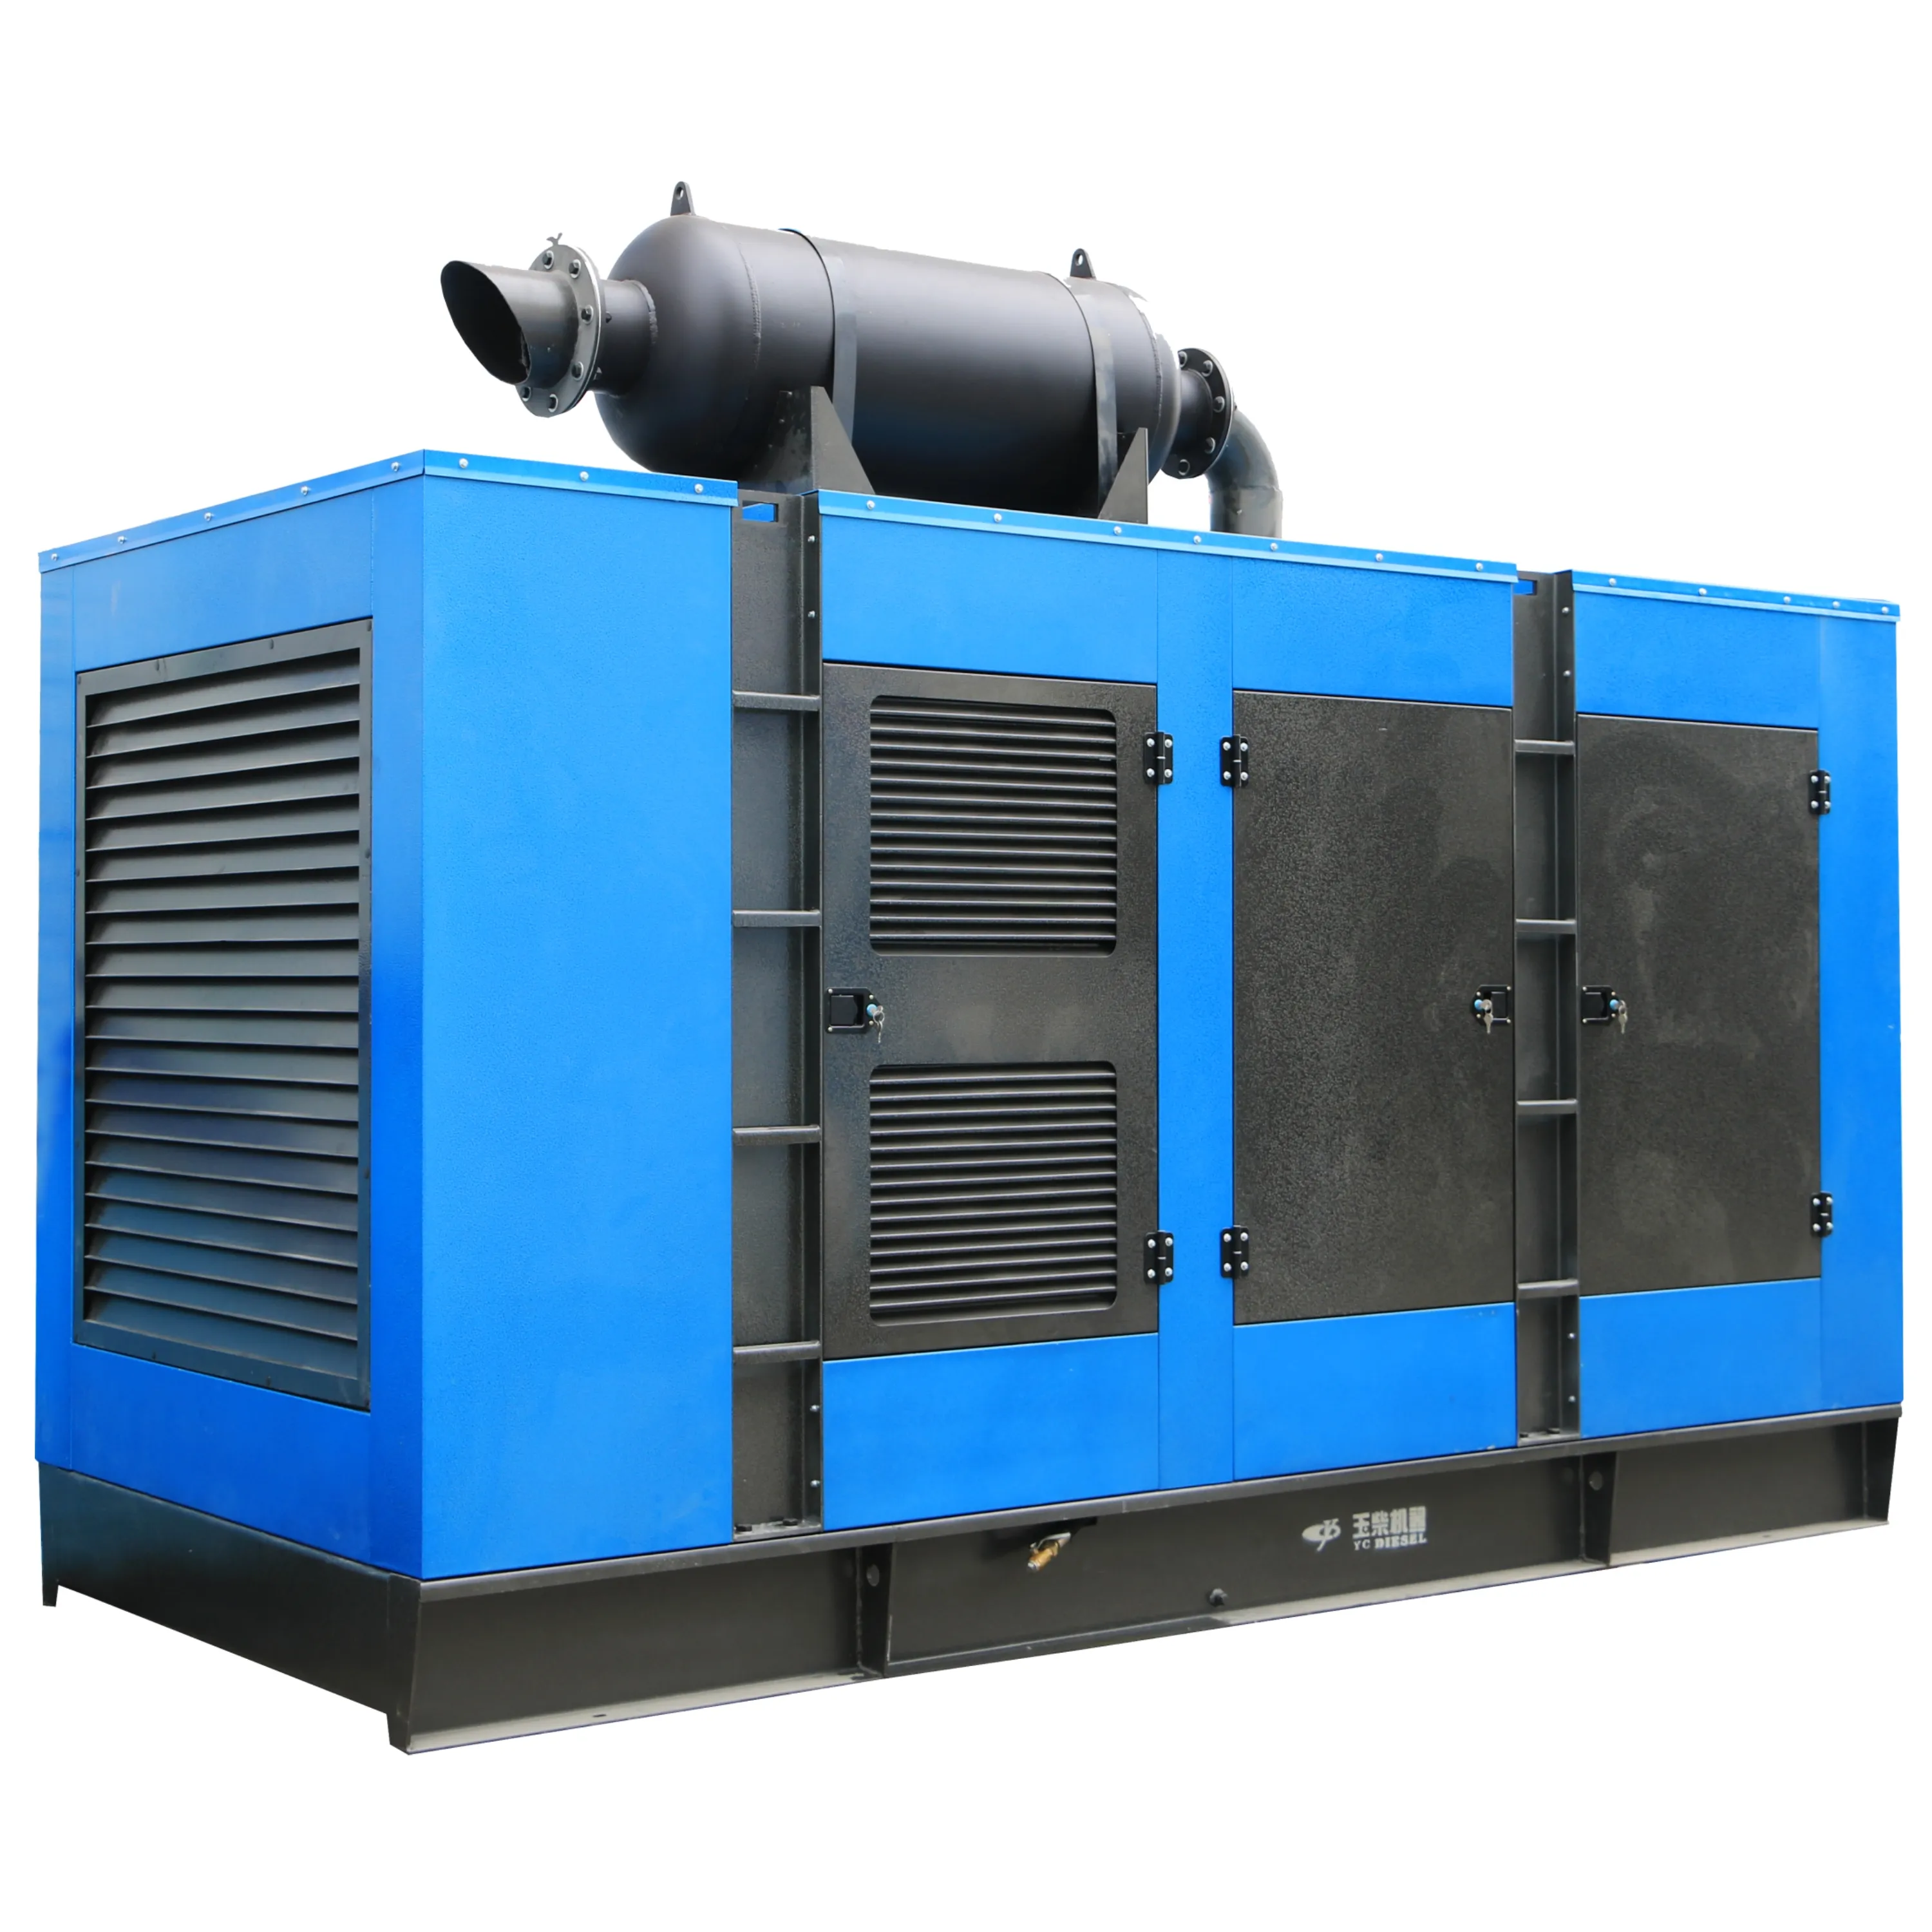 Generator Generators China Factories 100kw 50Hz Diesel Generator Set Engine Generator Set Portable Silent Diesel Generators